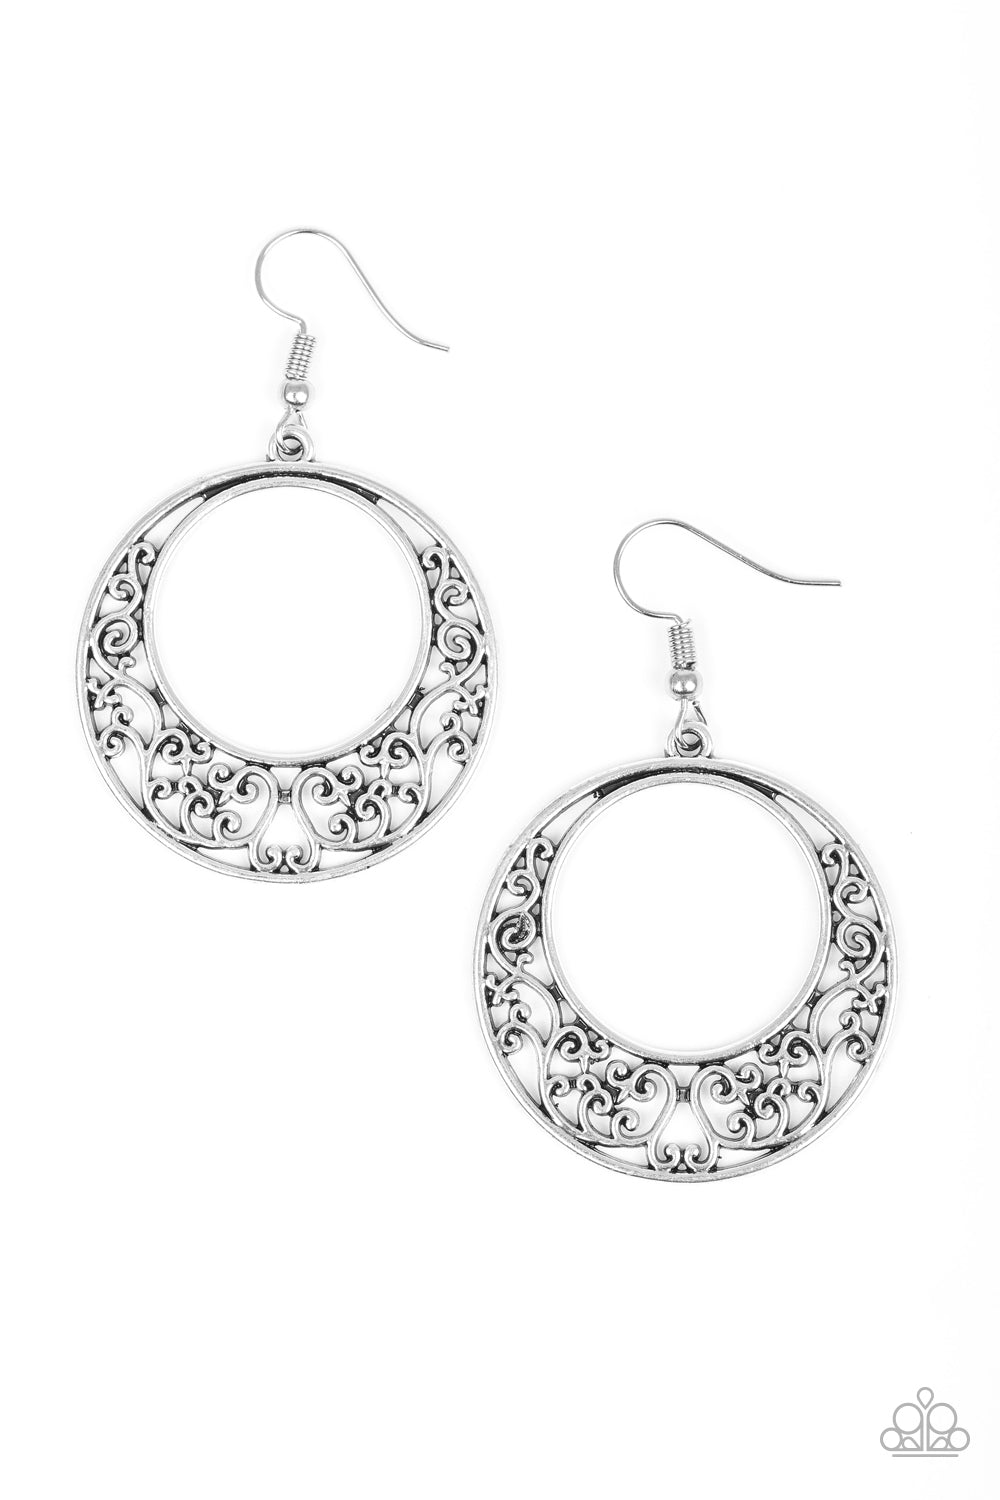 Newport Nautical - silver - Paparazzi earrings